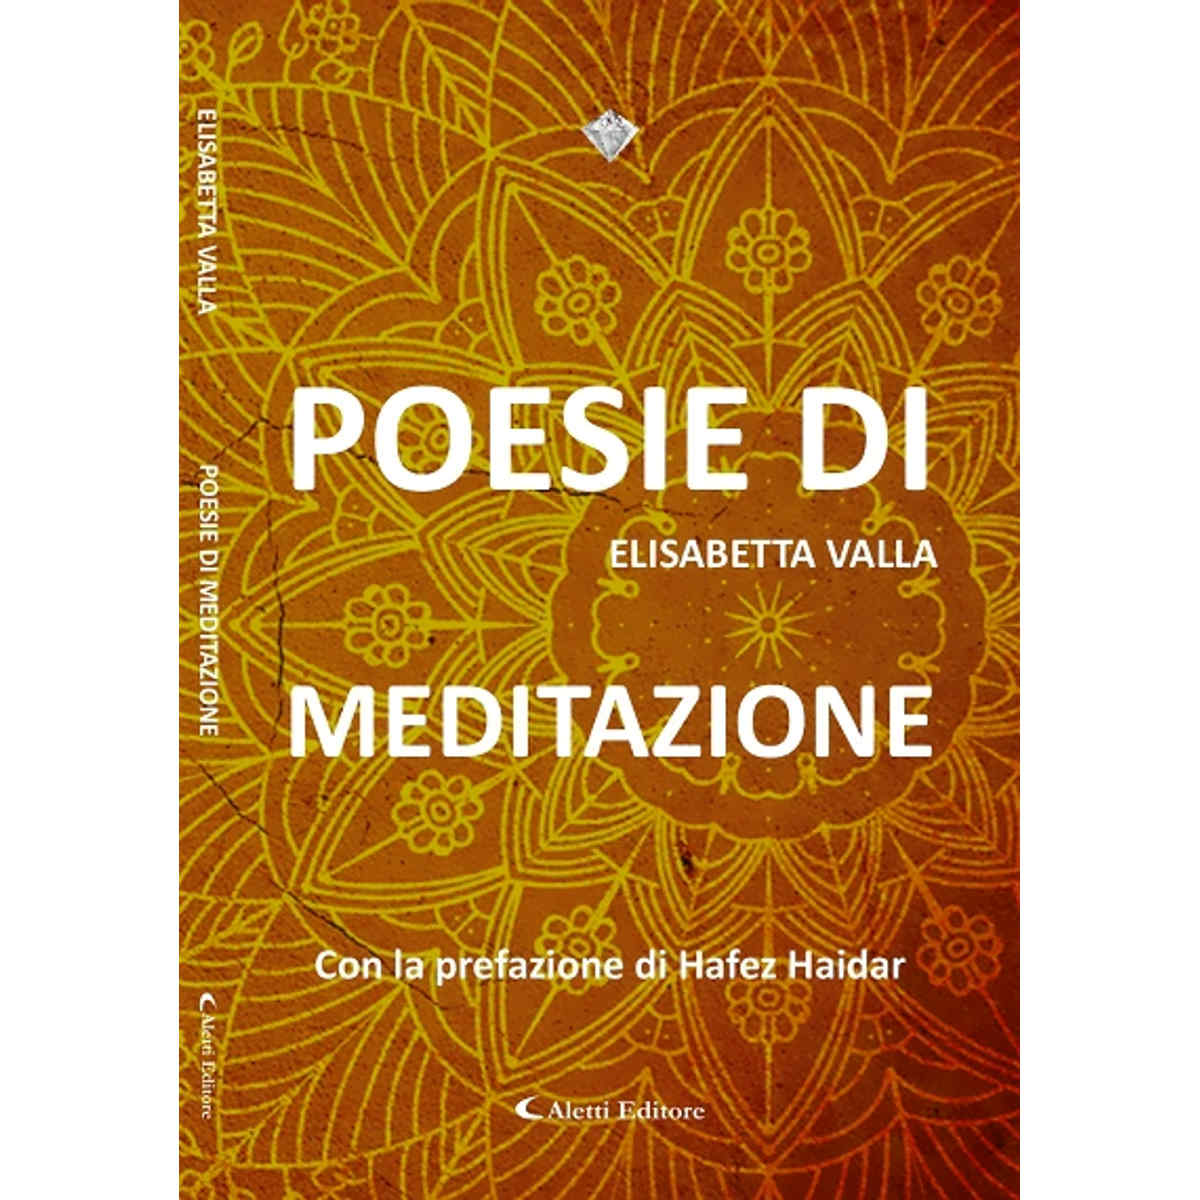 “Poesie di meditazione”. Yoga e parole per abitare la propria essenza